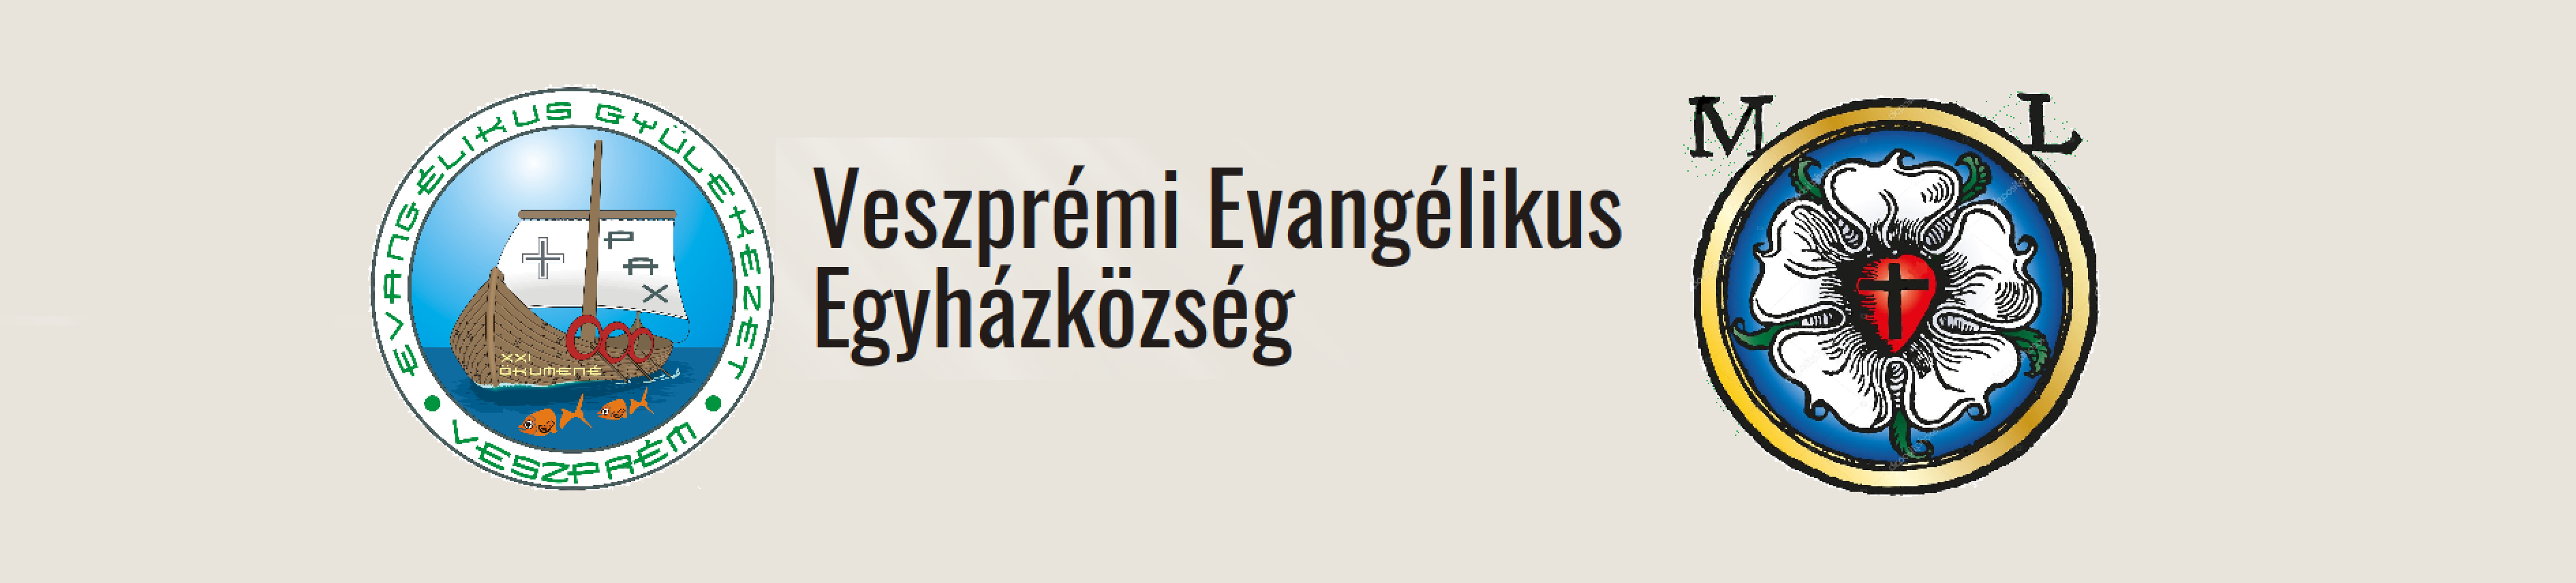 Veszprémi Evangélikus Egyházközség